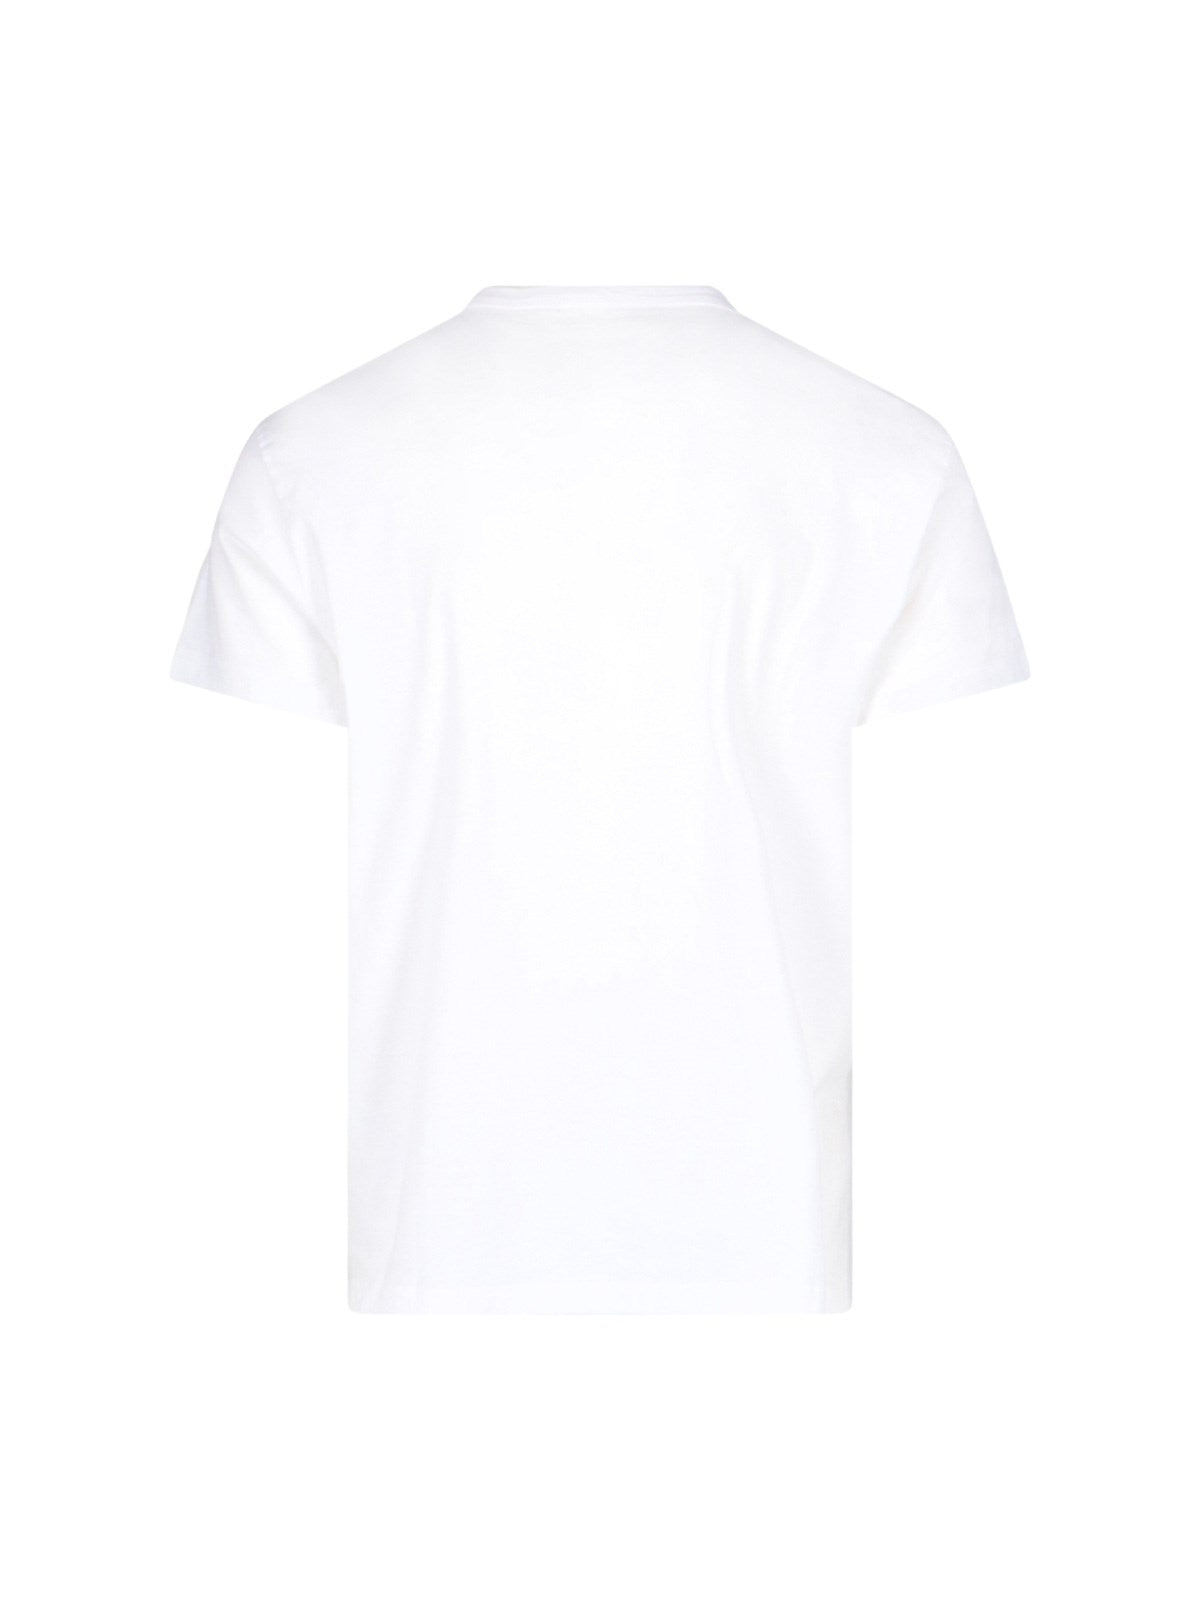 Maison Margiela T-Shirt "numeric logo"-t-shirt-Maison Margiela-T-shirt "numeric logo" Maison Margiela, in cotone bianco, girocollo, maniche corte, stampa "numeric logo" nera fronte, dettaglio "four stitches" retro, orlo dritto.-Dresso